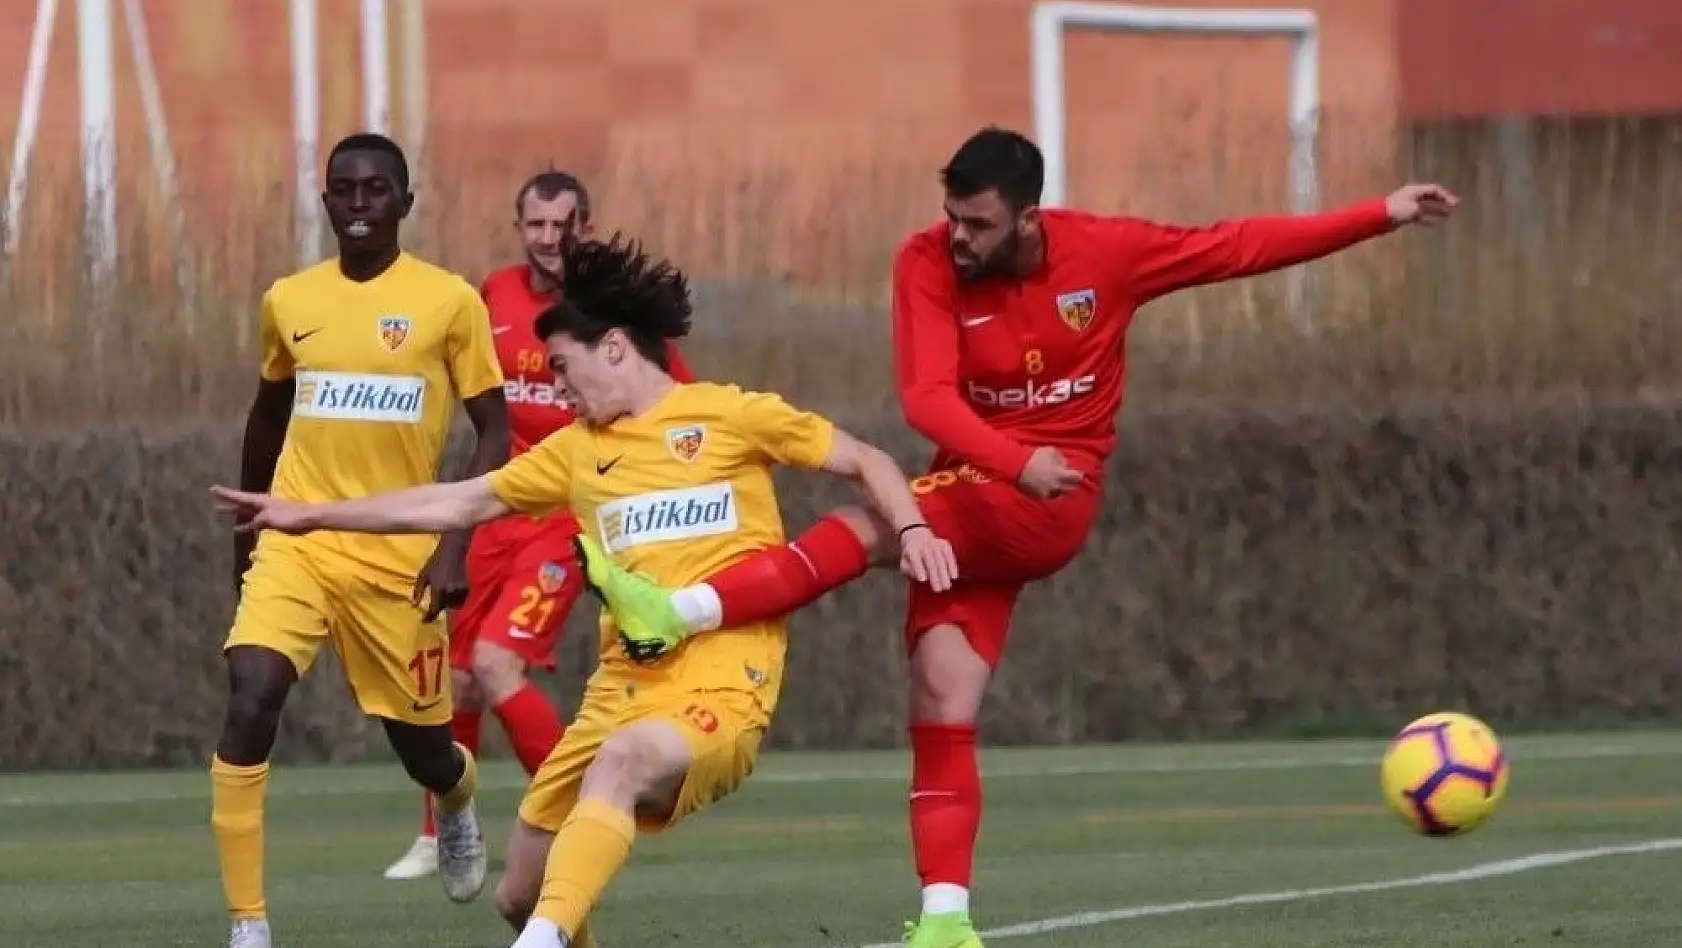 İM. Kayserispor, U21 Takımı ile yaptığı hazırlık maçını 5-2 kazandı